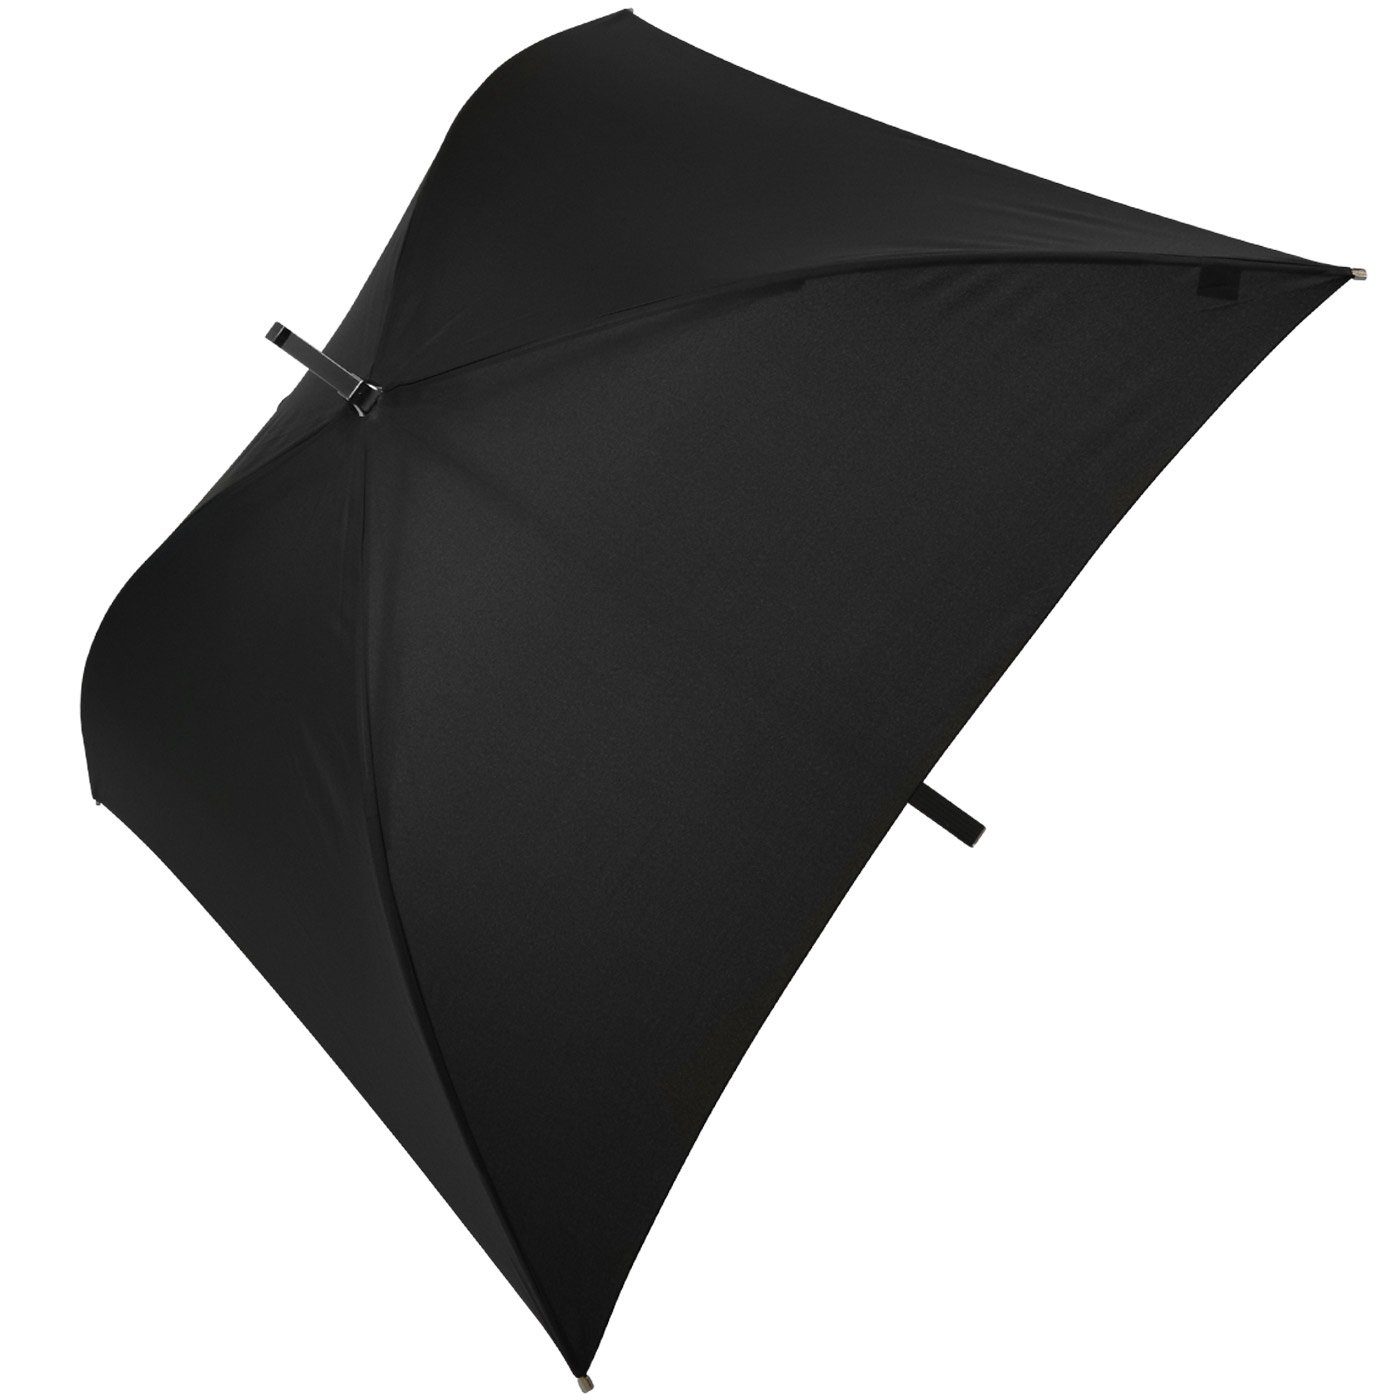 Square® Regenschirm Impliva ganz quadratischer Regenschirm, Langregenschirm schwarz voll der All besondere